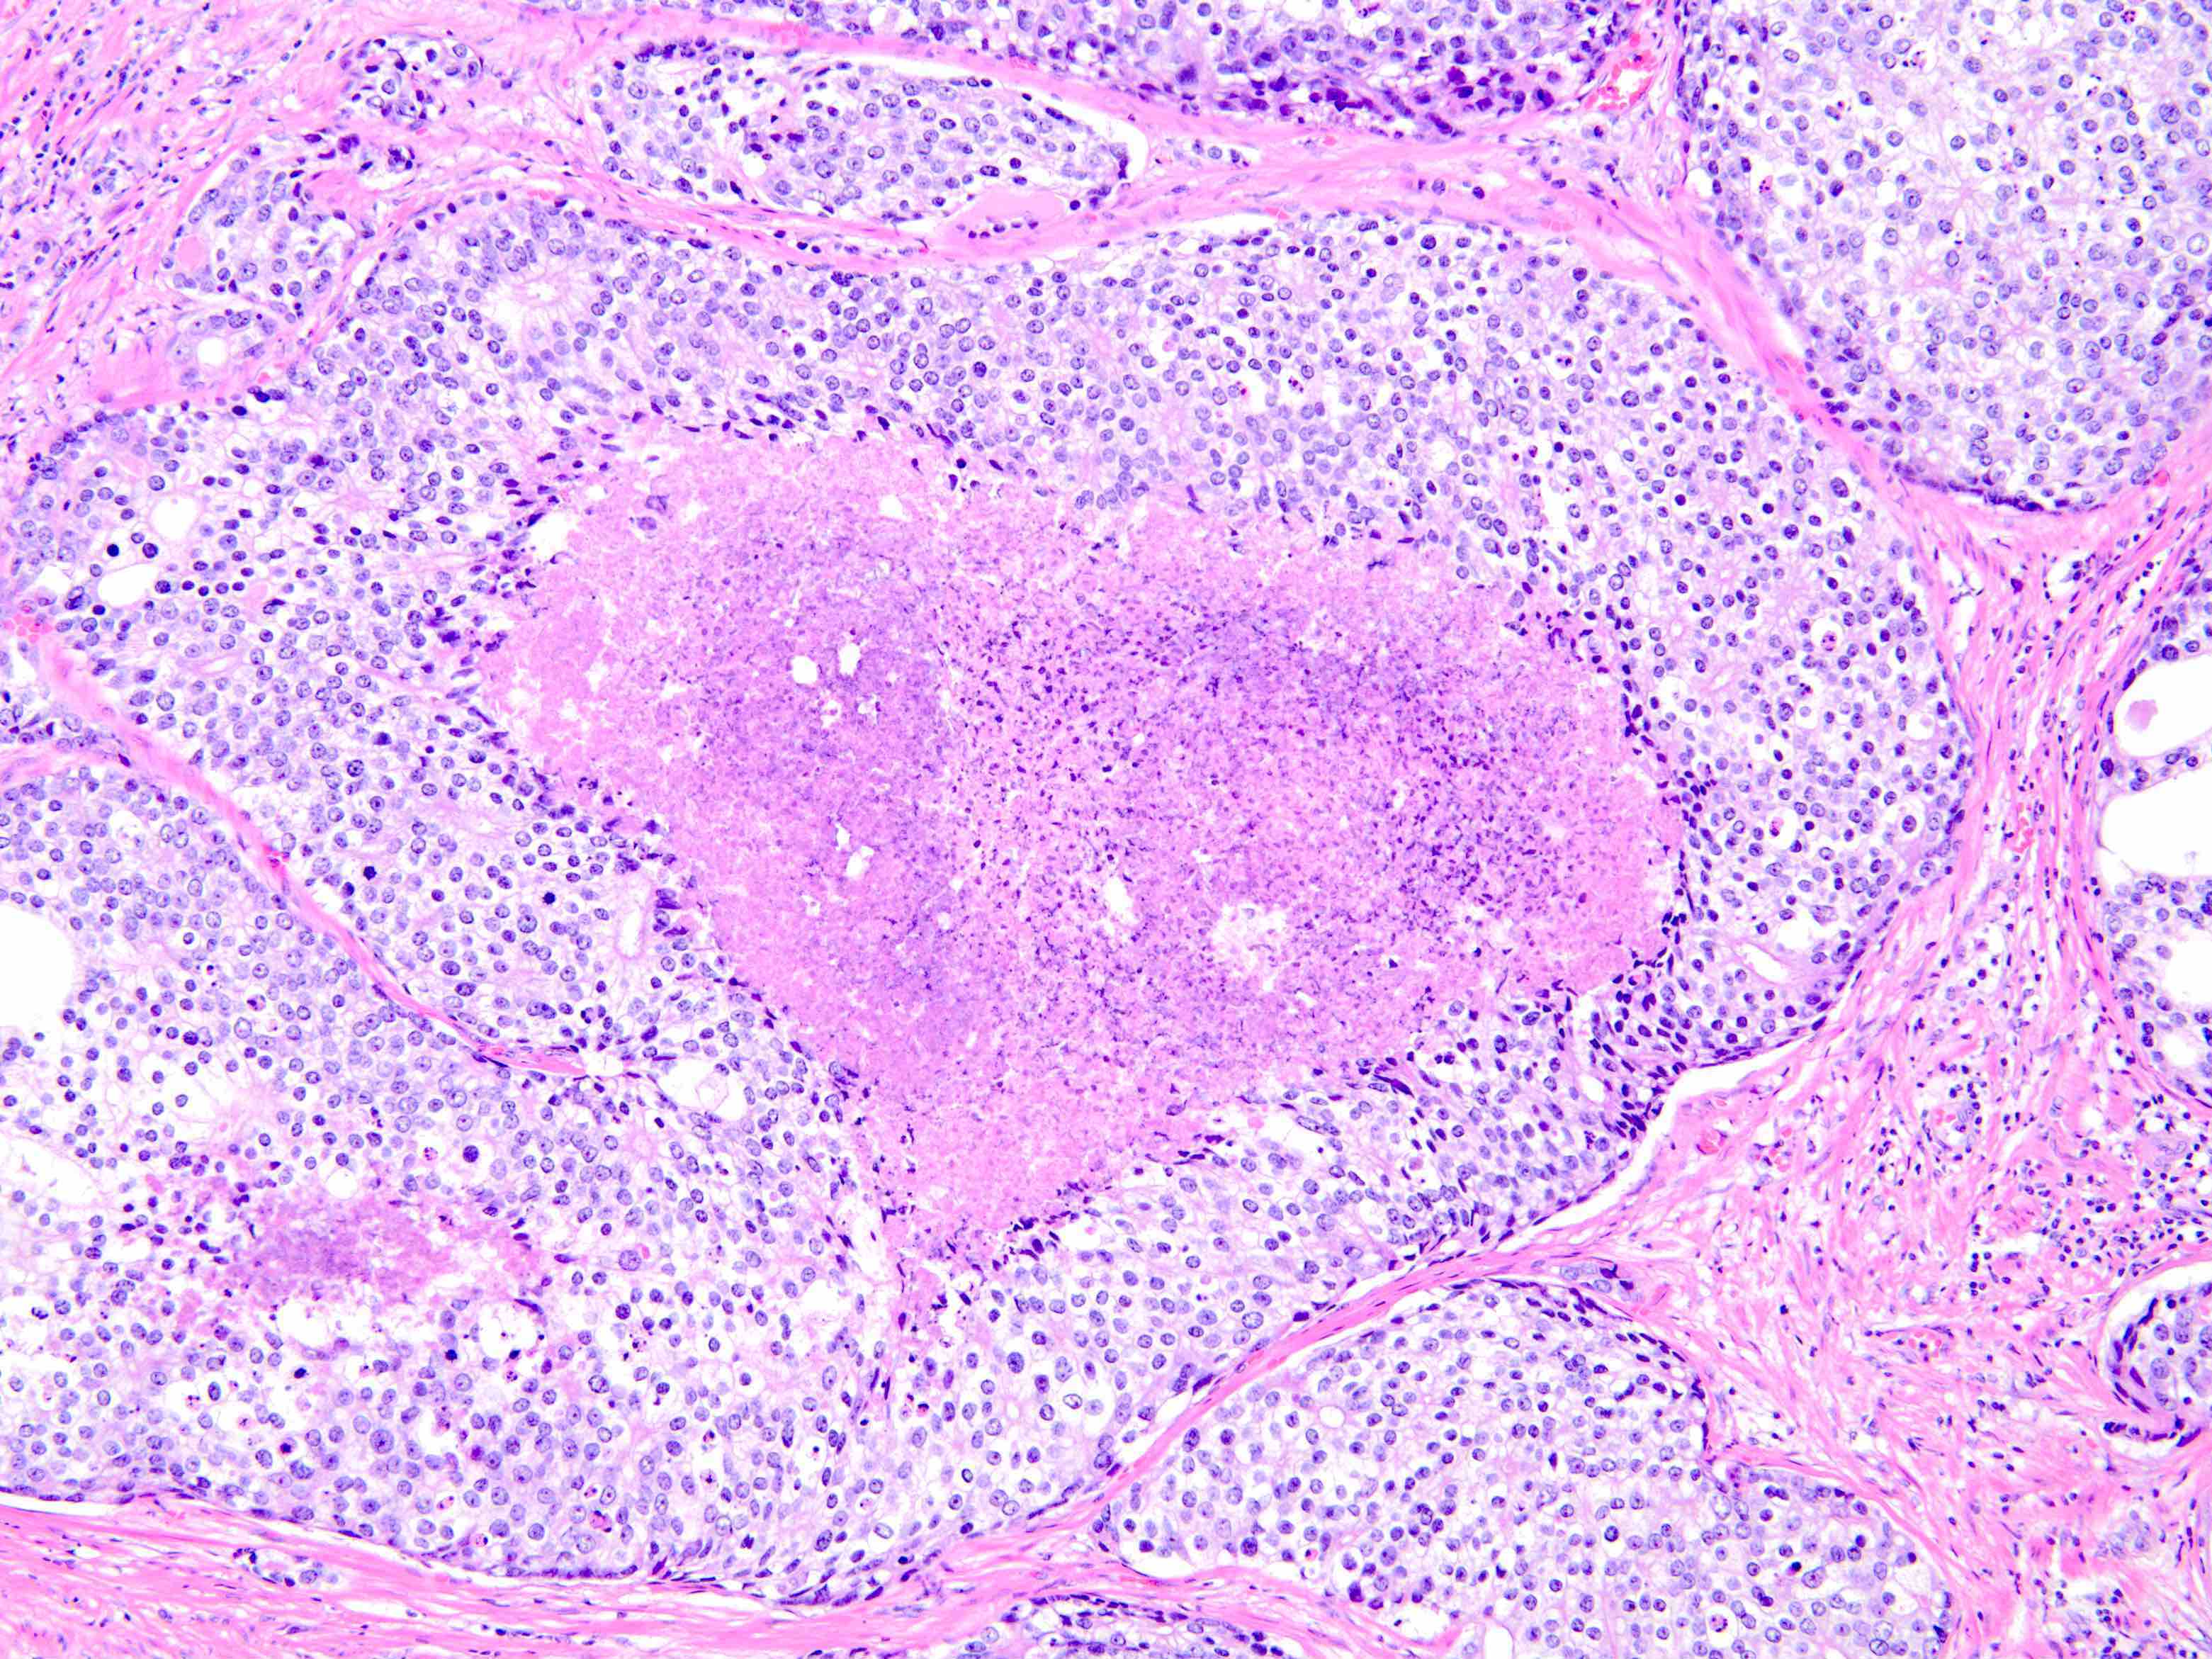 prostatic adenocarcinoma ihc pathology outlines)